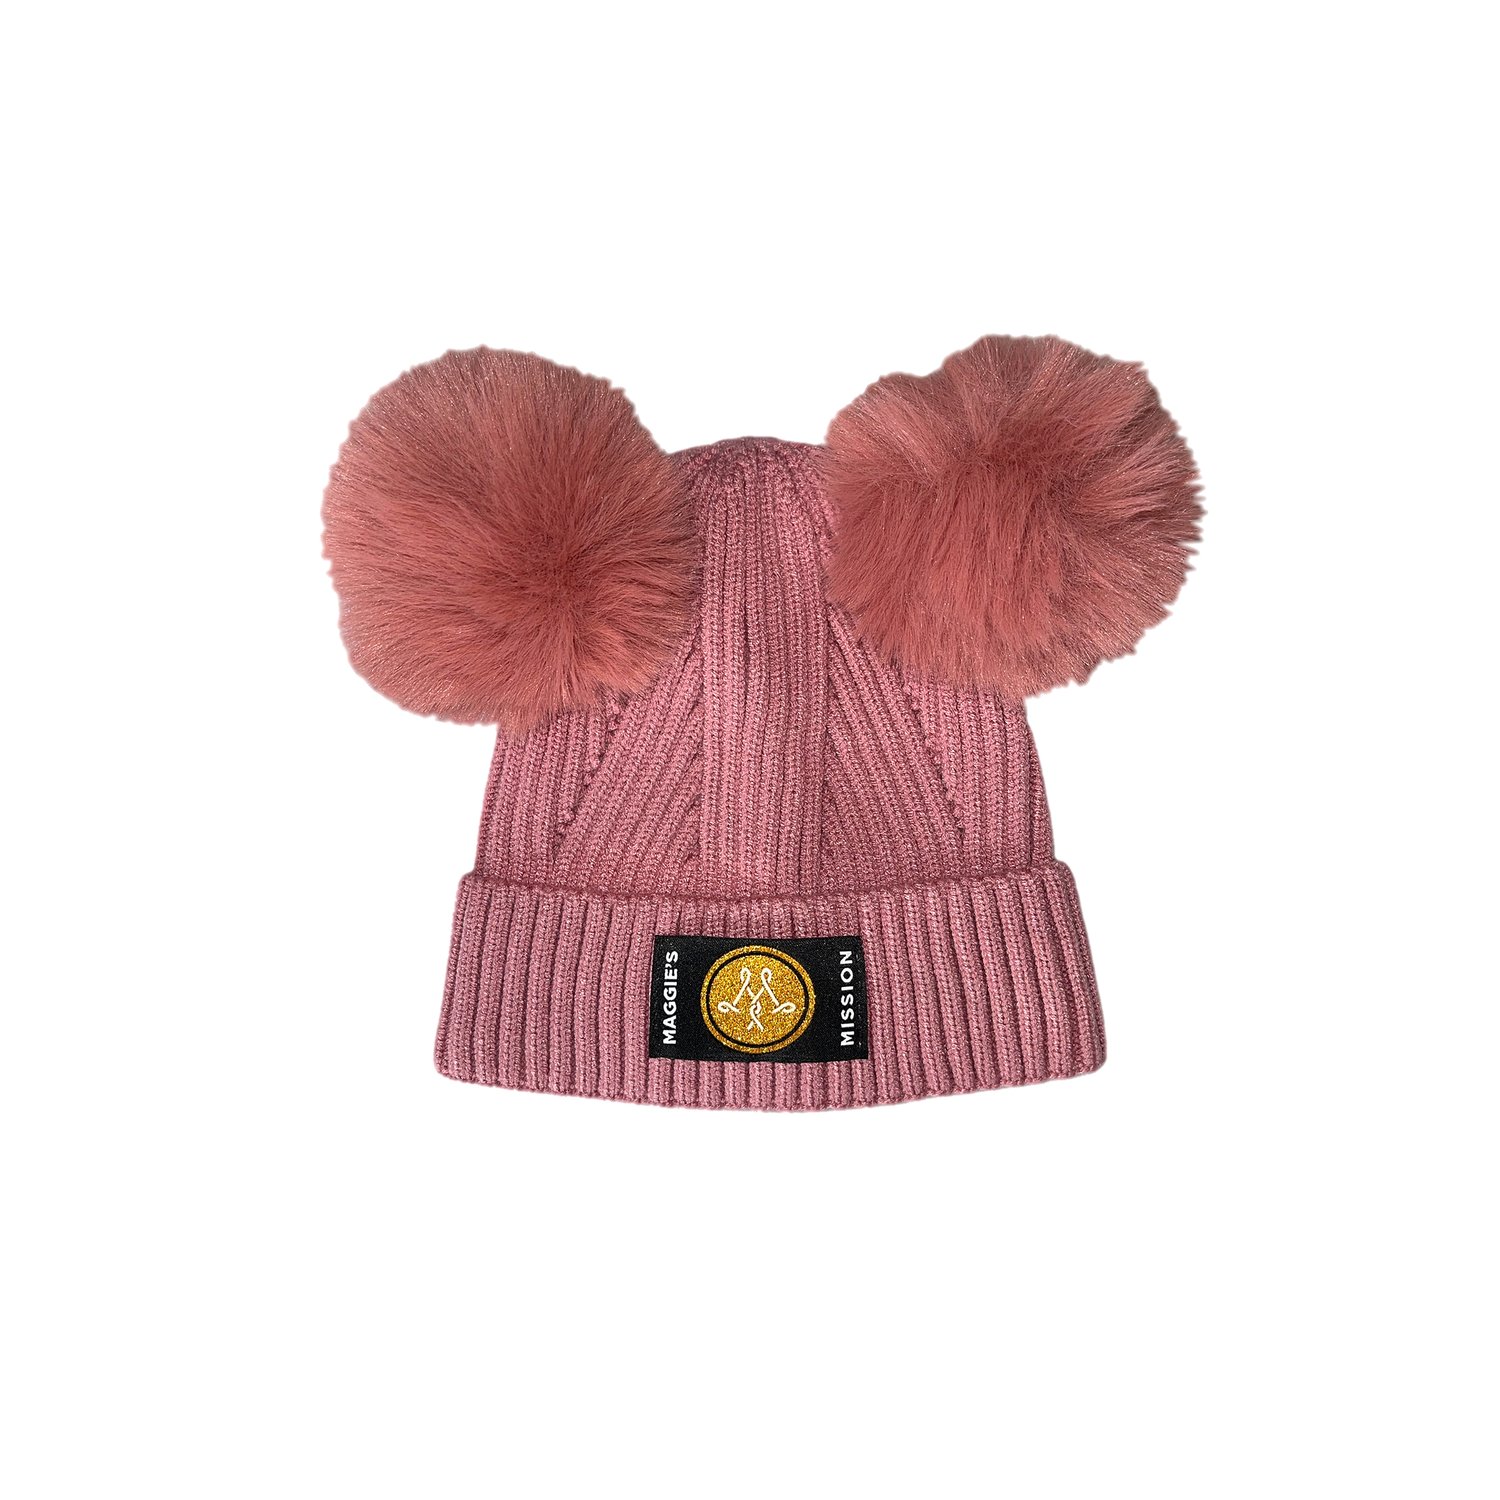 Maggie's Mission Pink Pom Pom Children's Knit Hat — Maggie's Mission